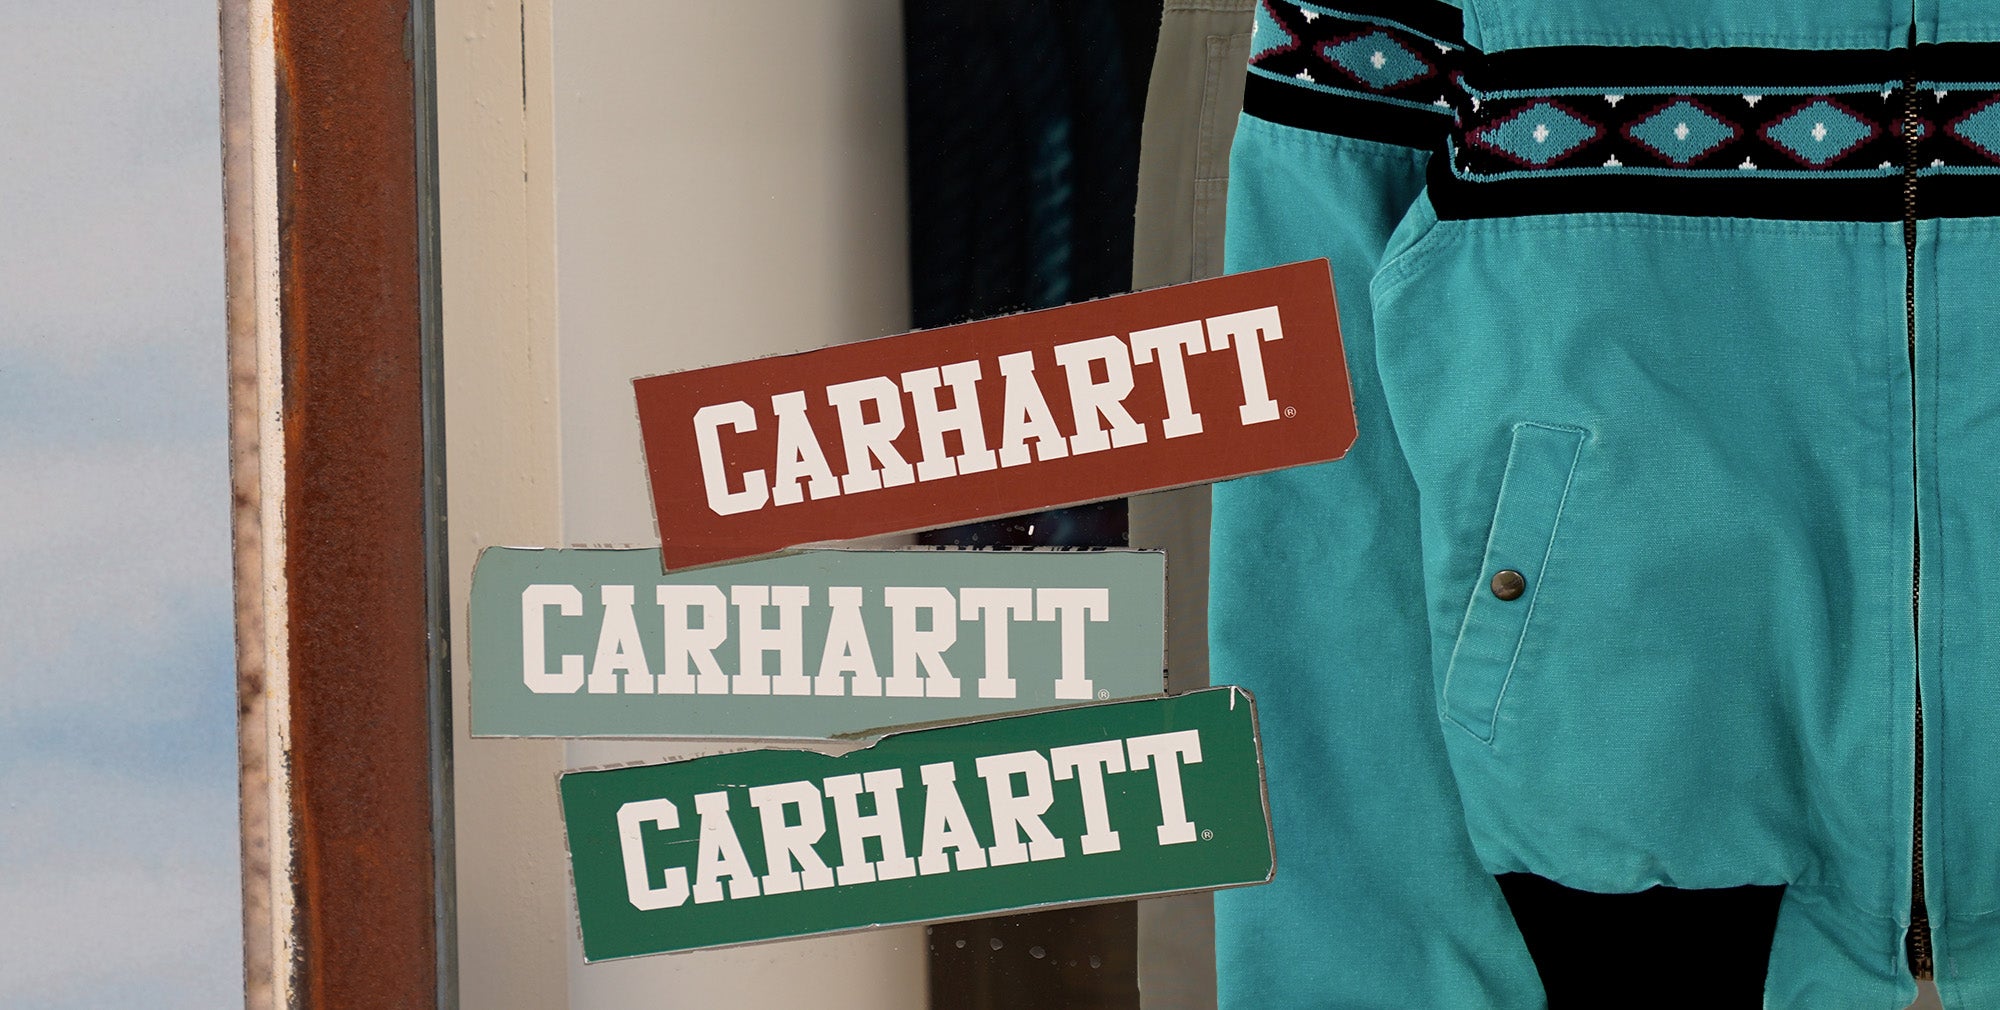 Shop window with Carhartt Santa Fe jacket on display.